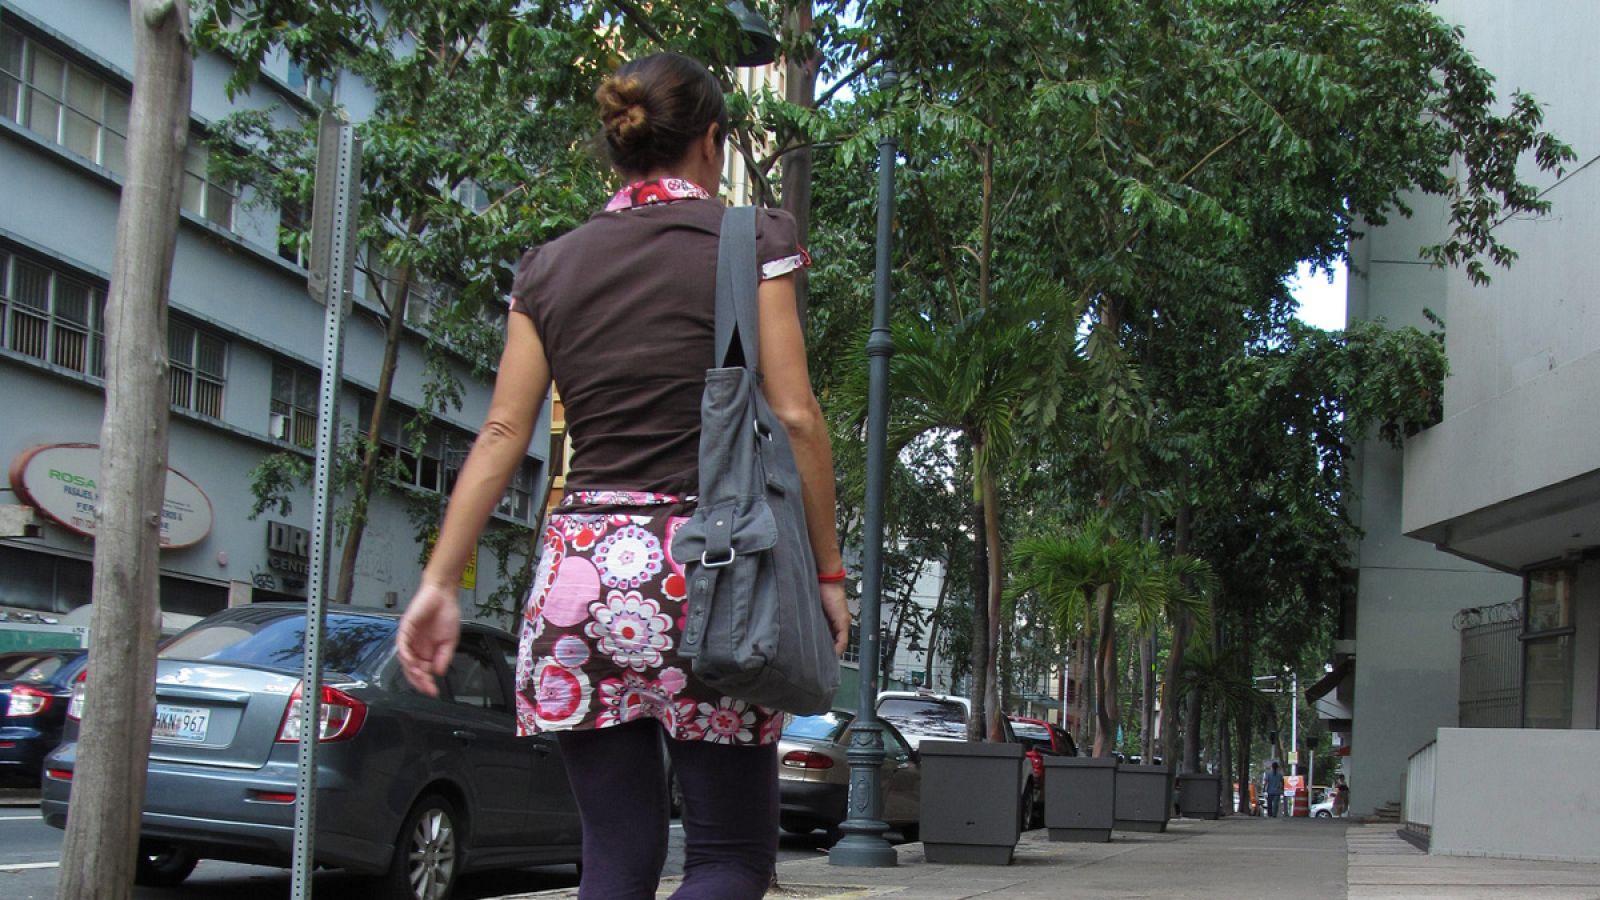 Imagen de arhivo de una joven andando por la calle.